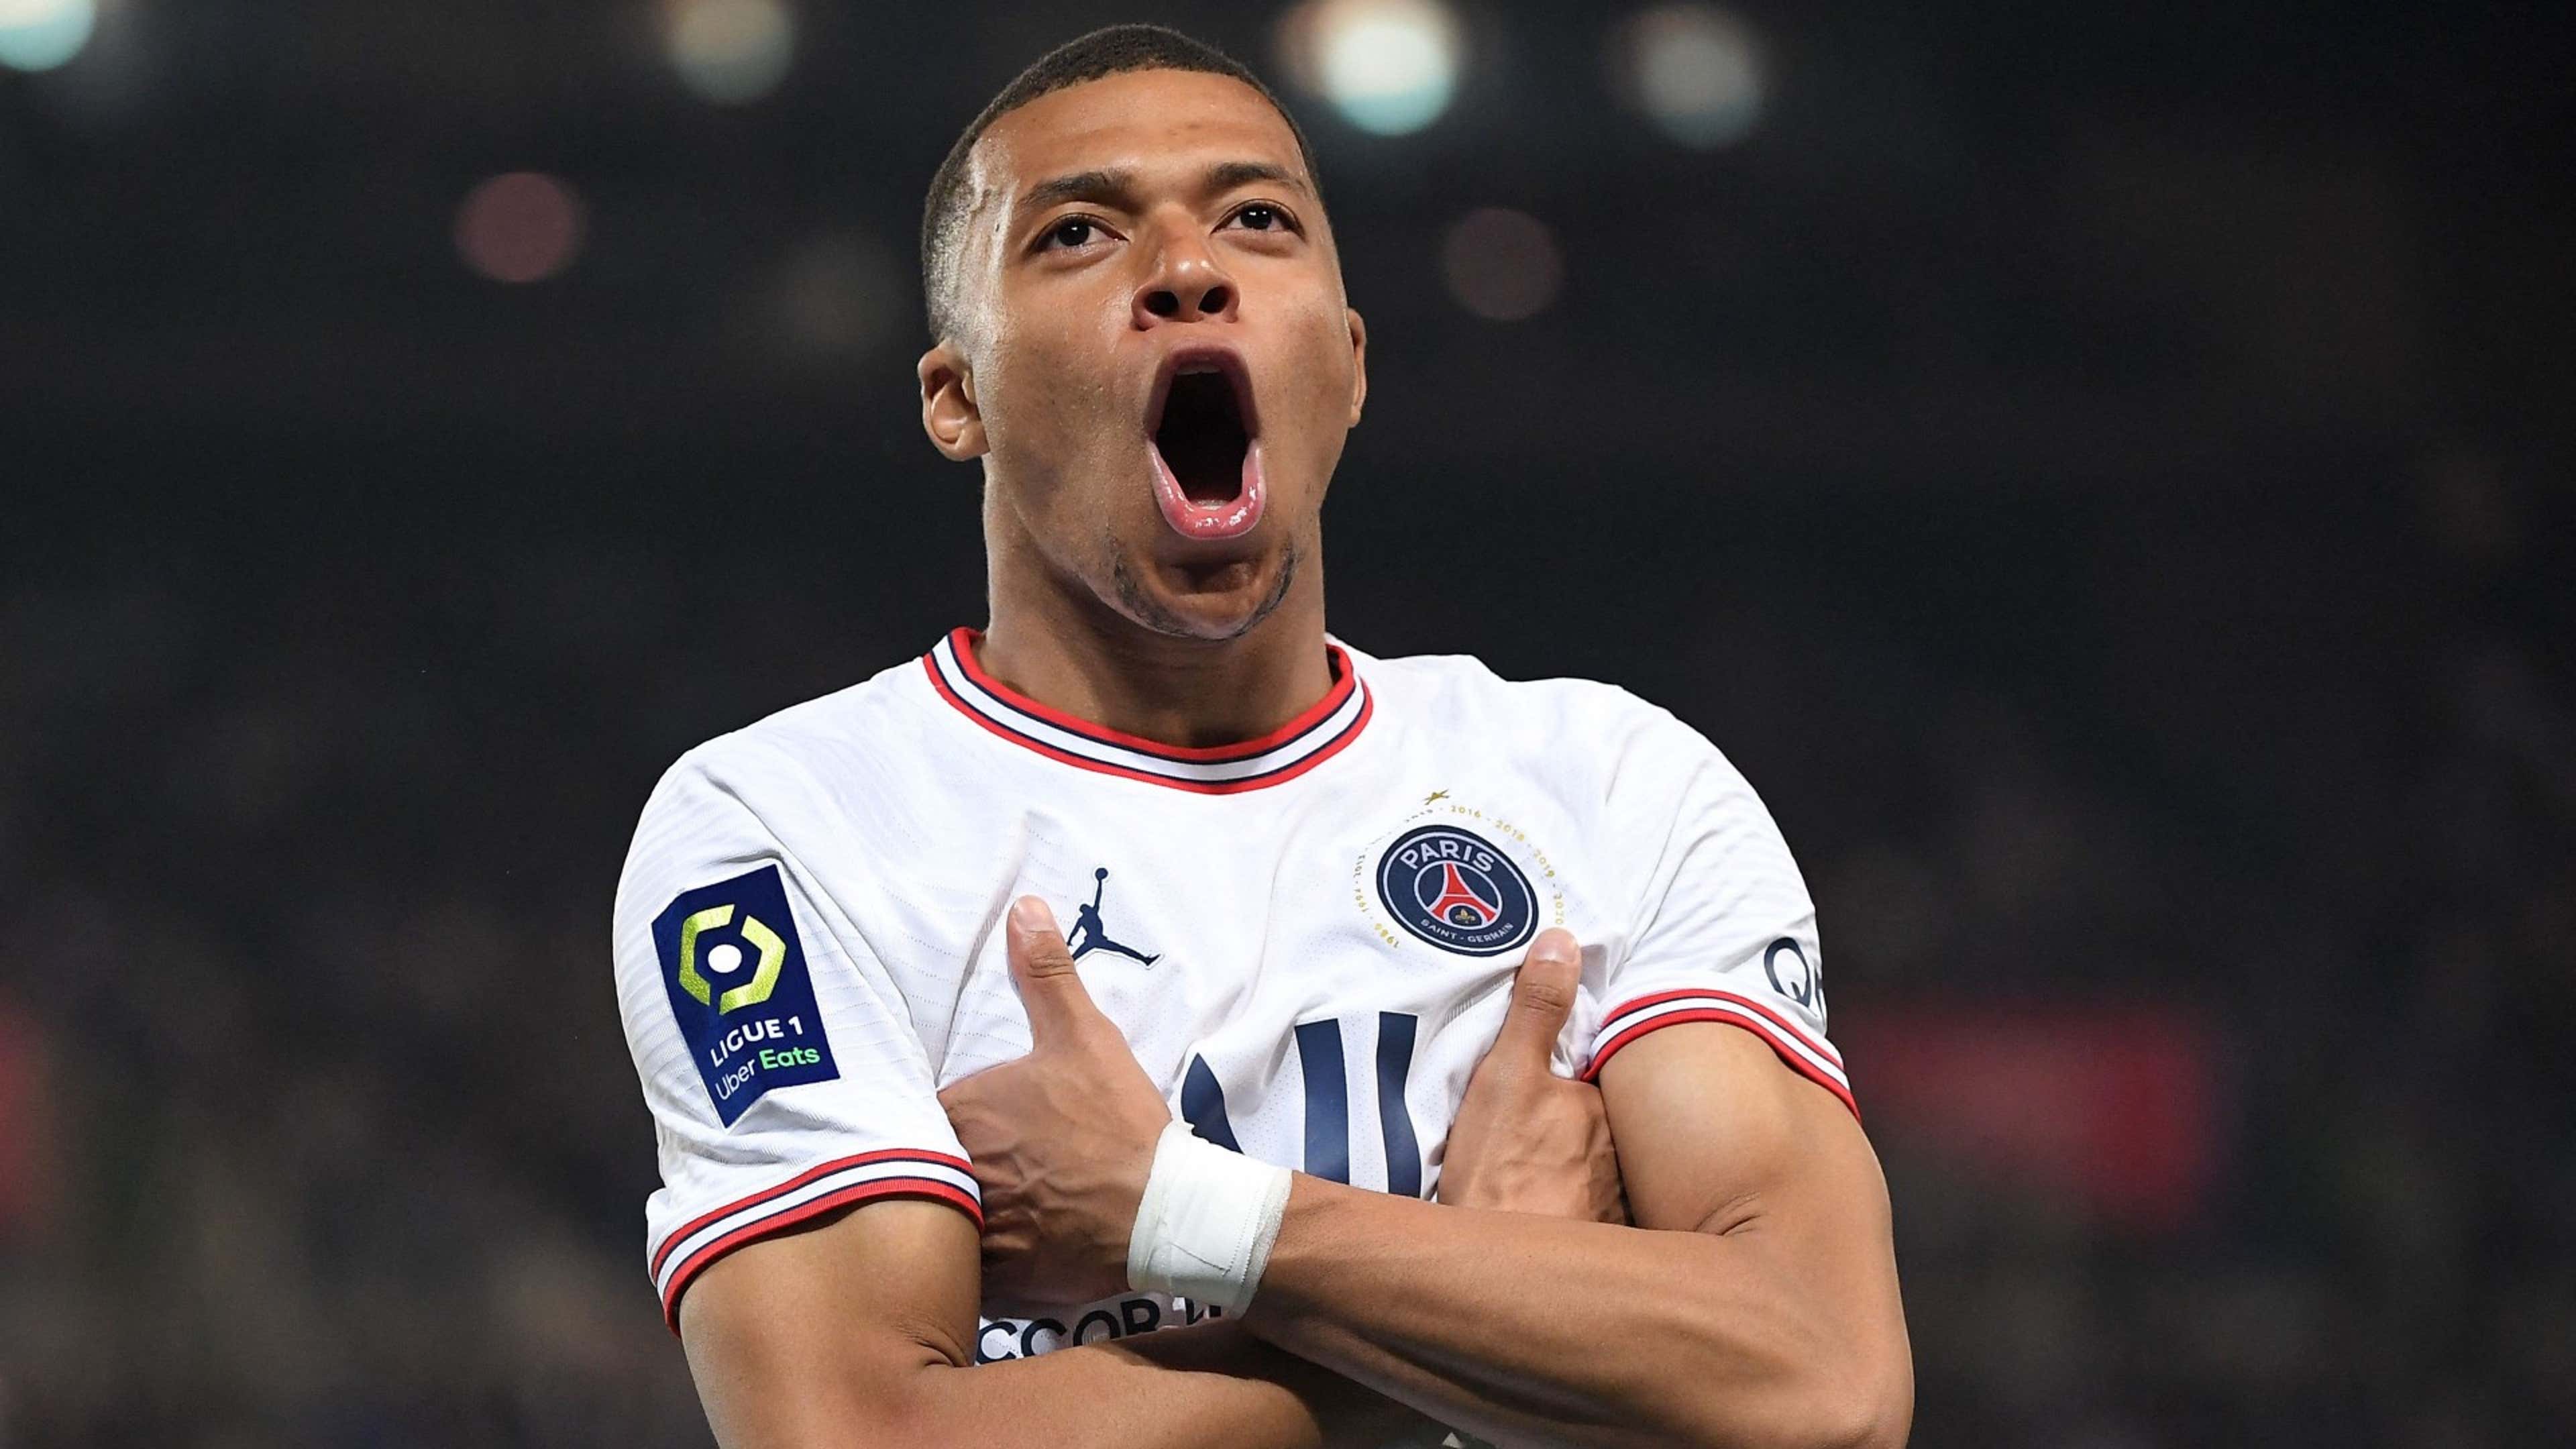 KLABU joins forces with Paris Saint-Germain